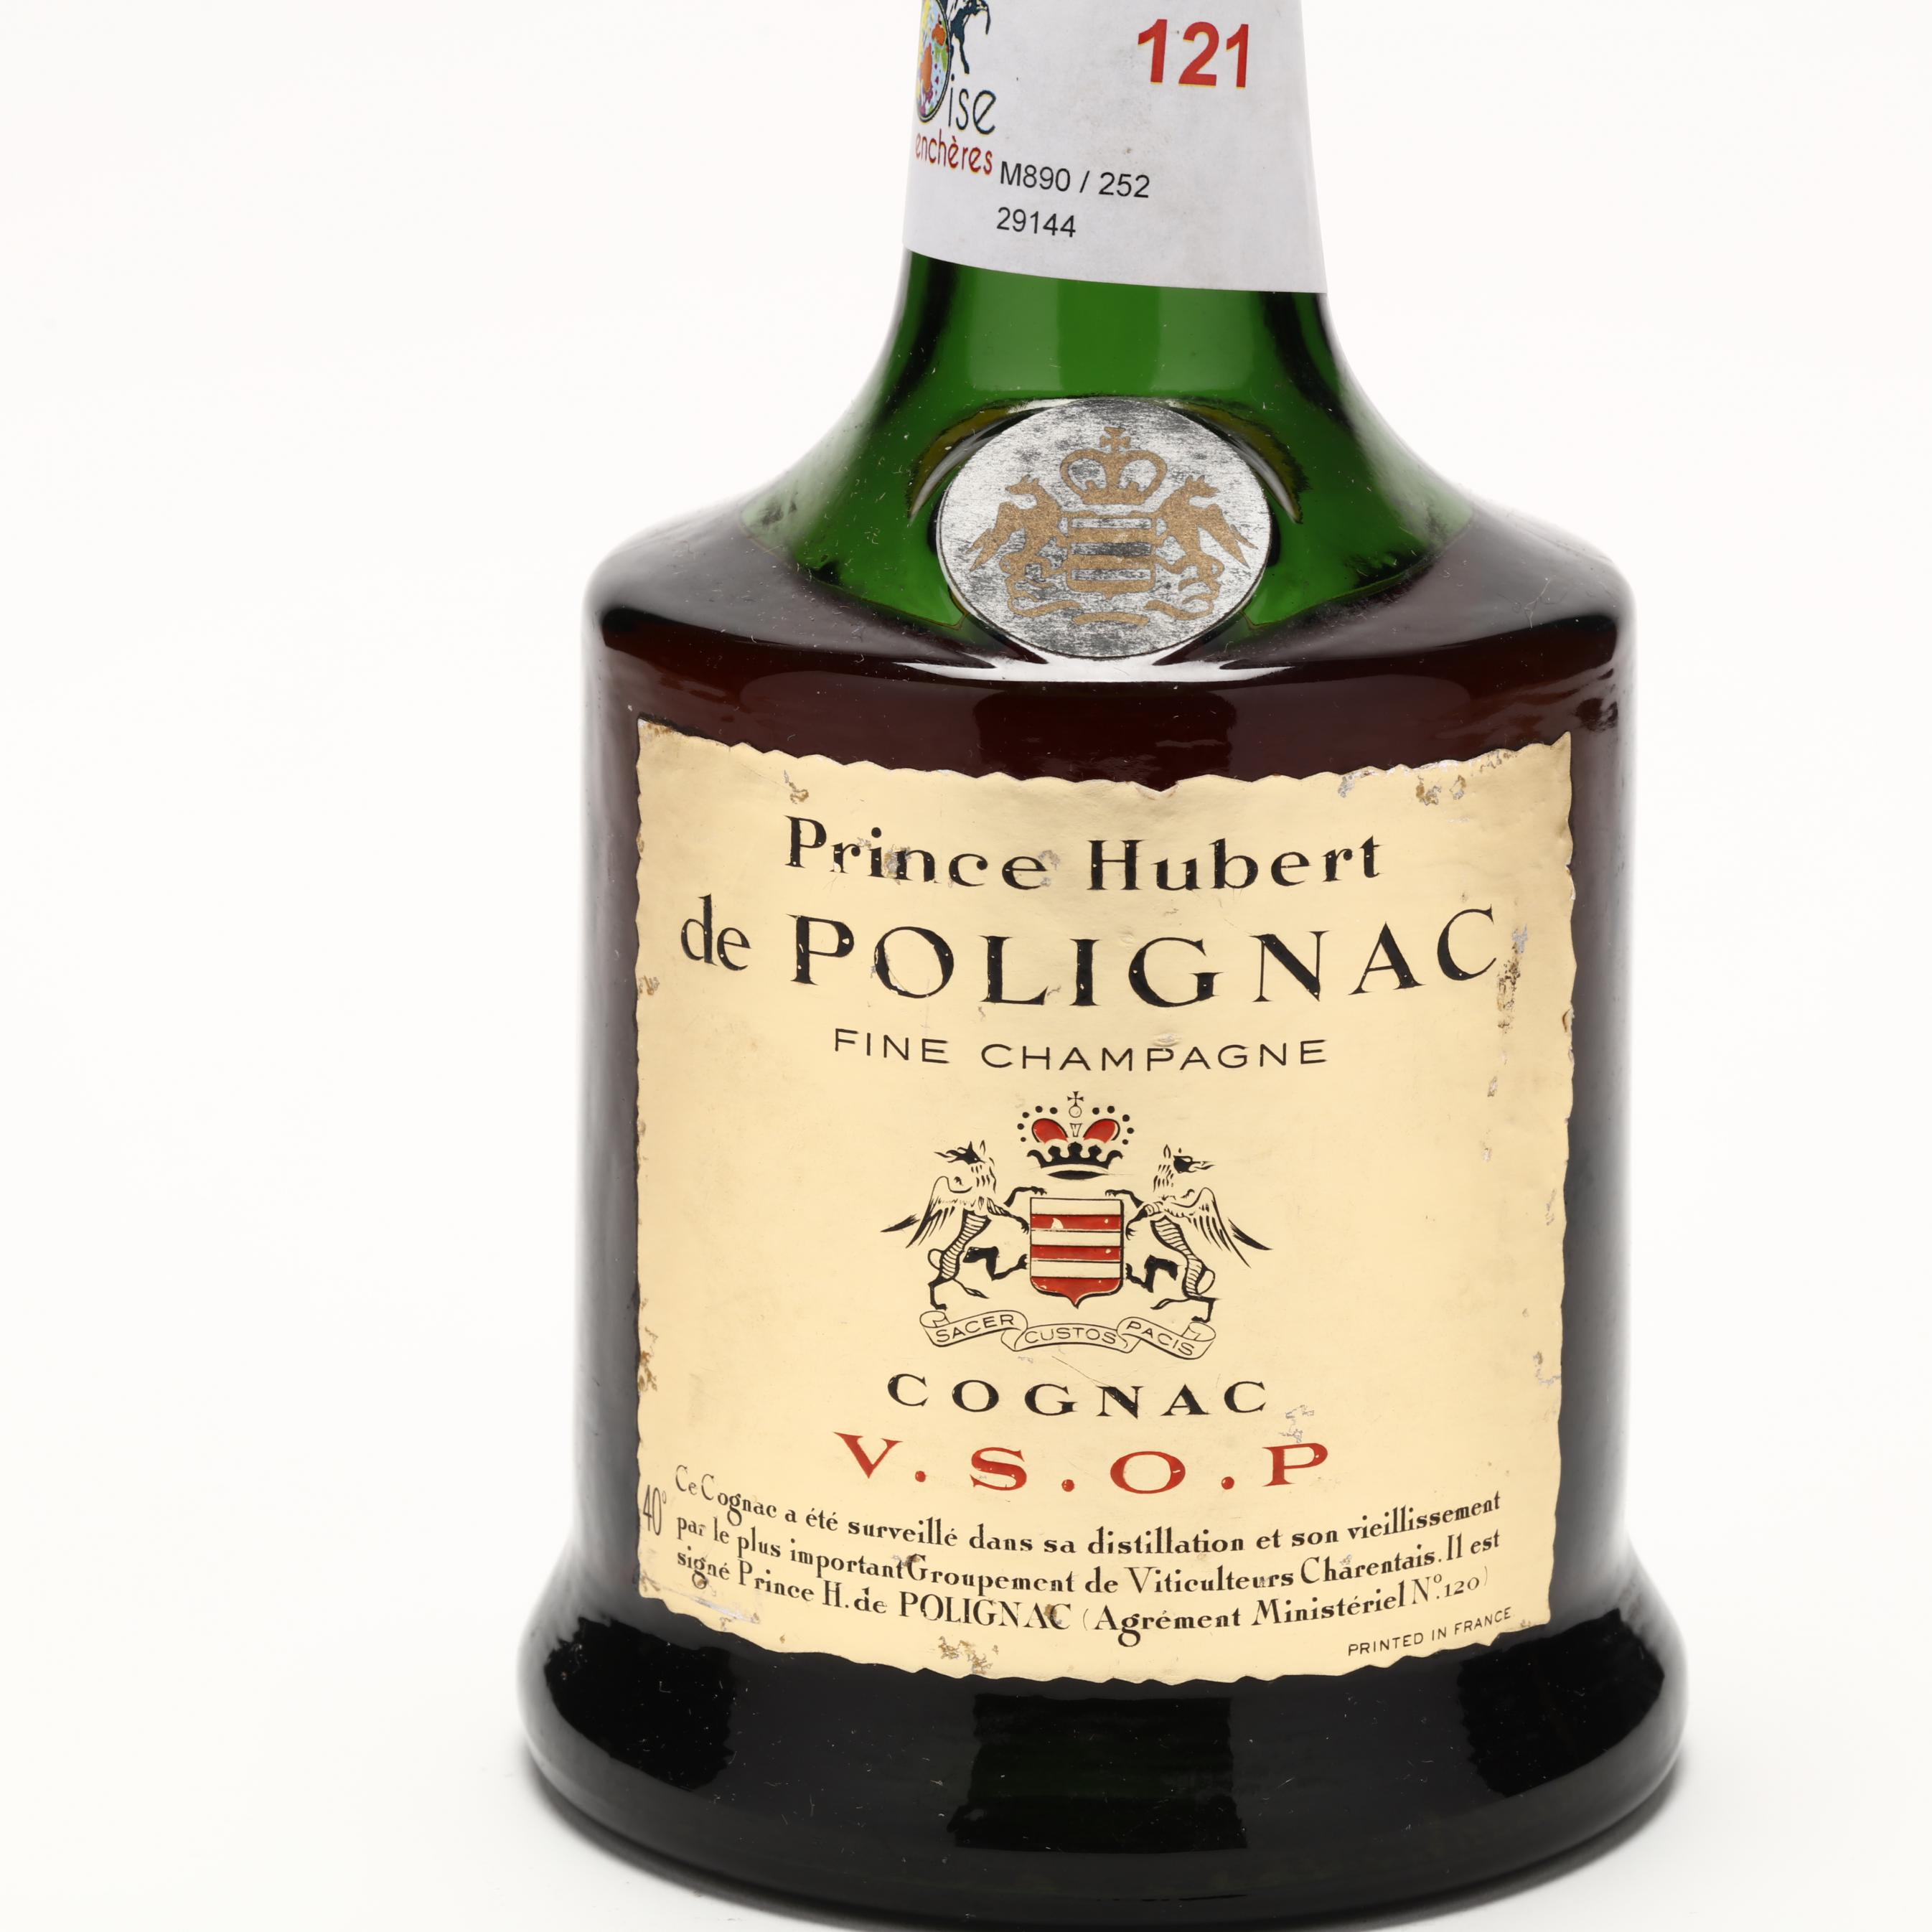 Prince Hubert de Polignac V.S.O.P. Cognac (Lot 8097 - Rare